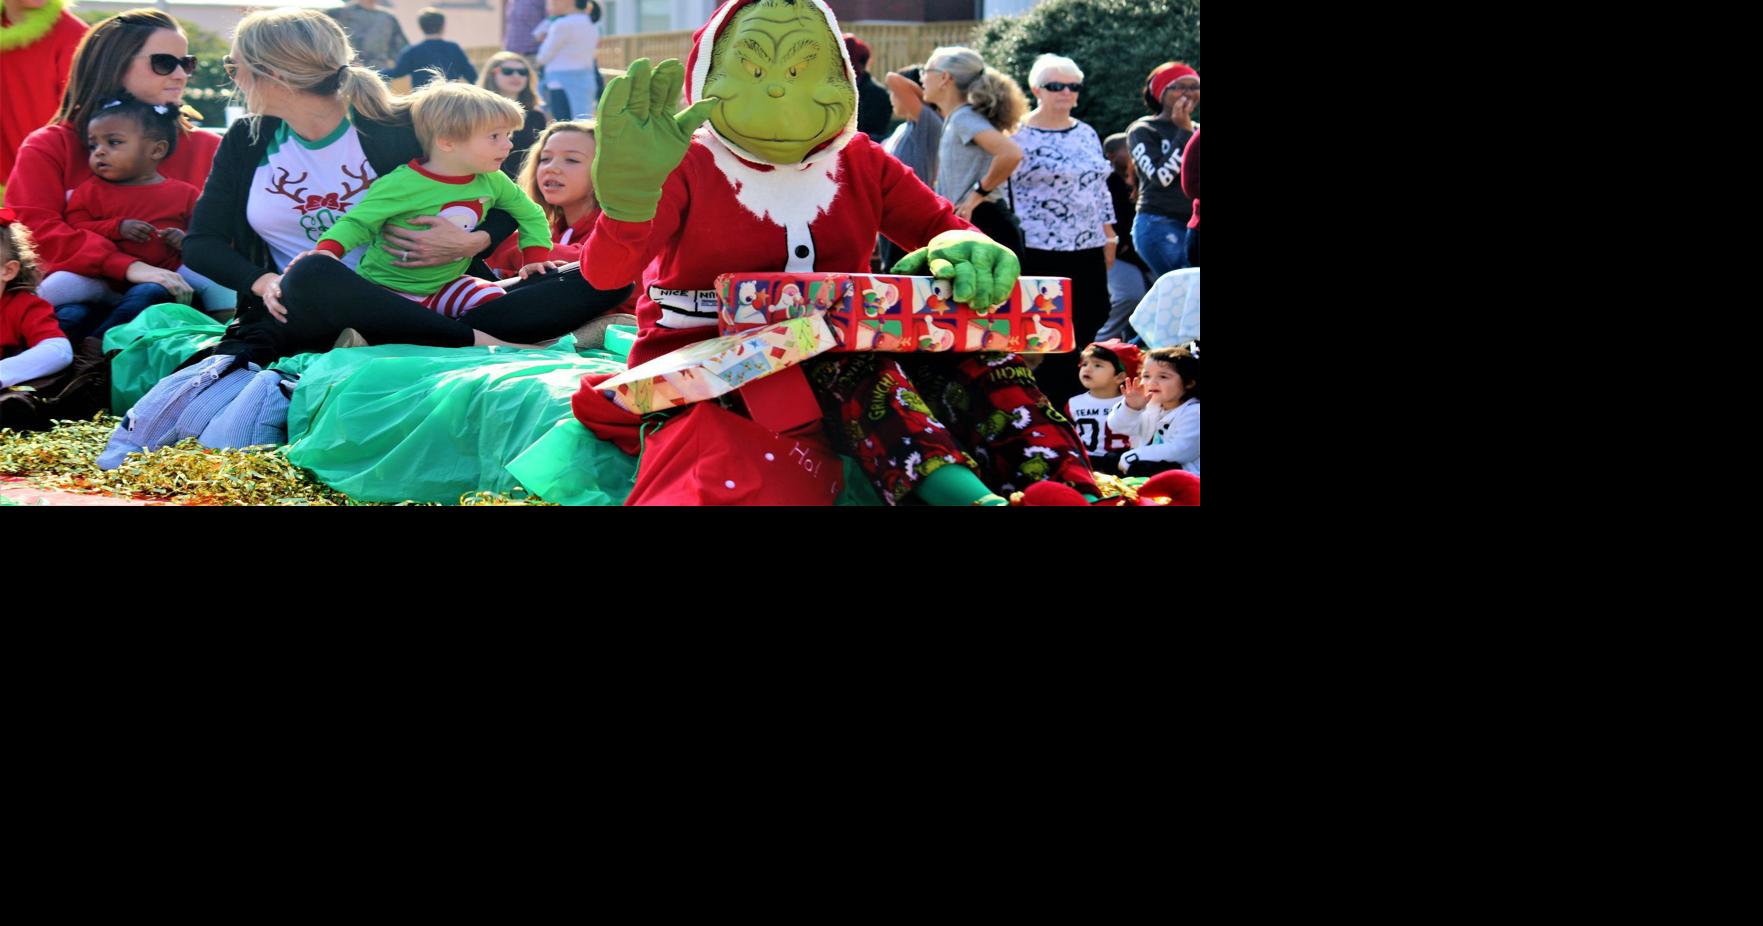 Opelika Christmas parade making a comeback